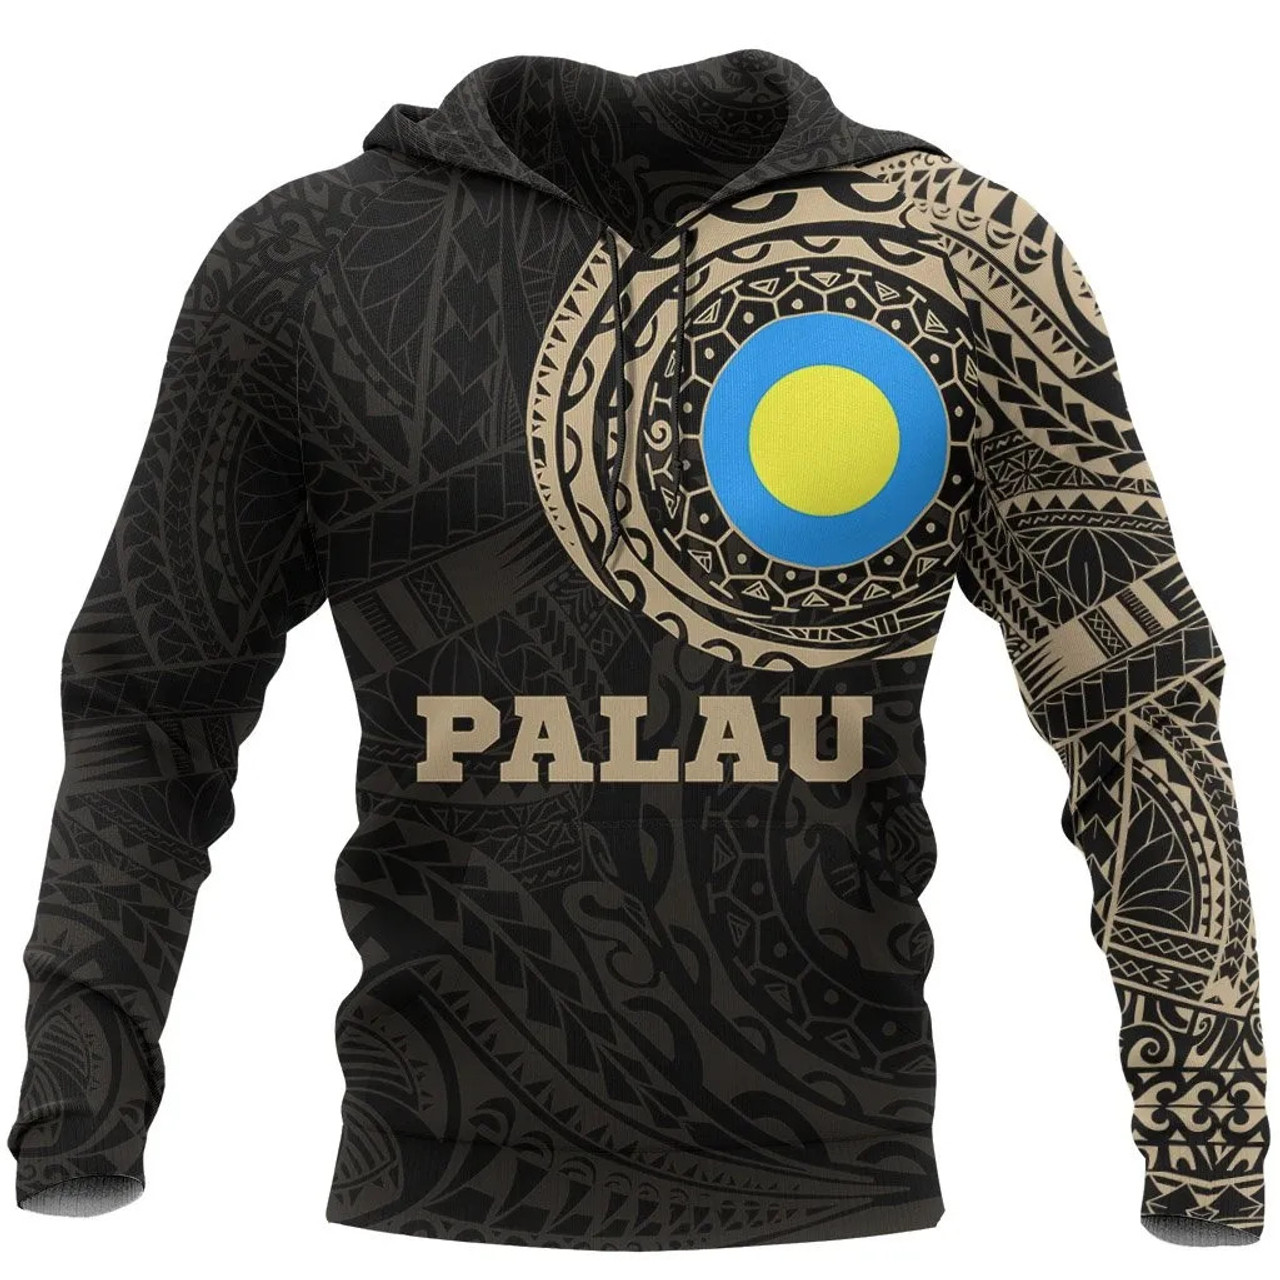 Palau Kid Hoodie - Palau Flag Polynesian Tattoo Style